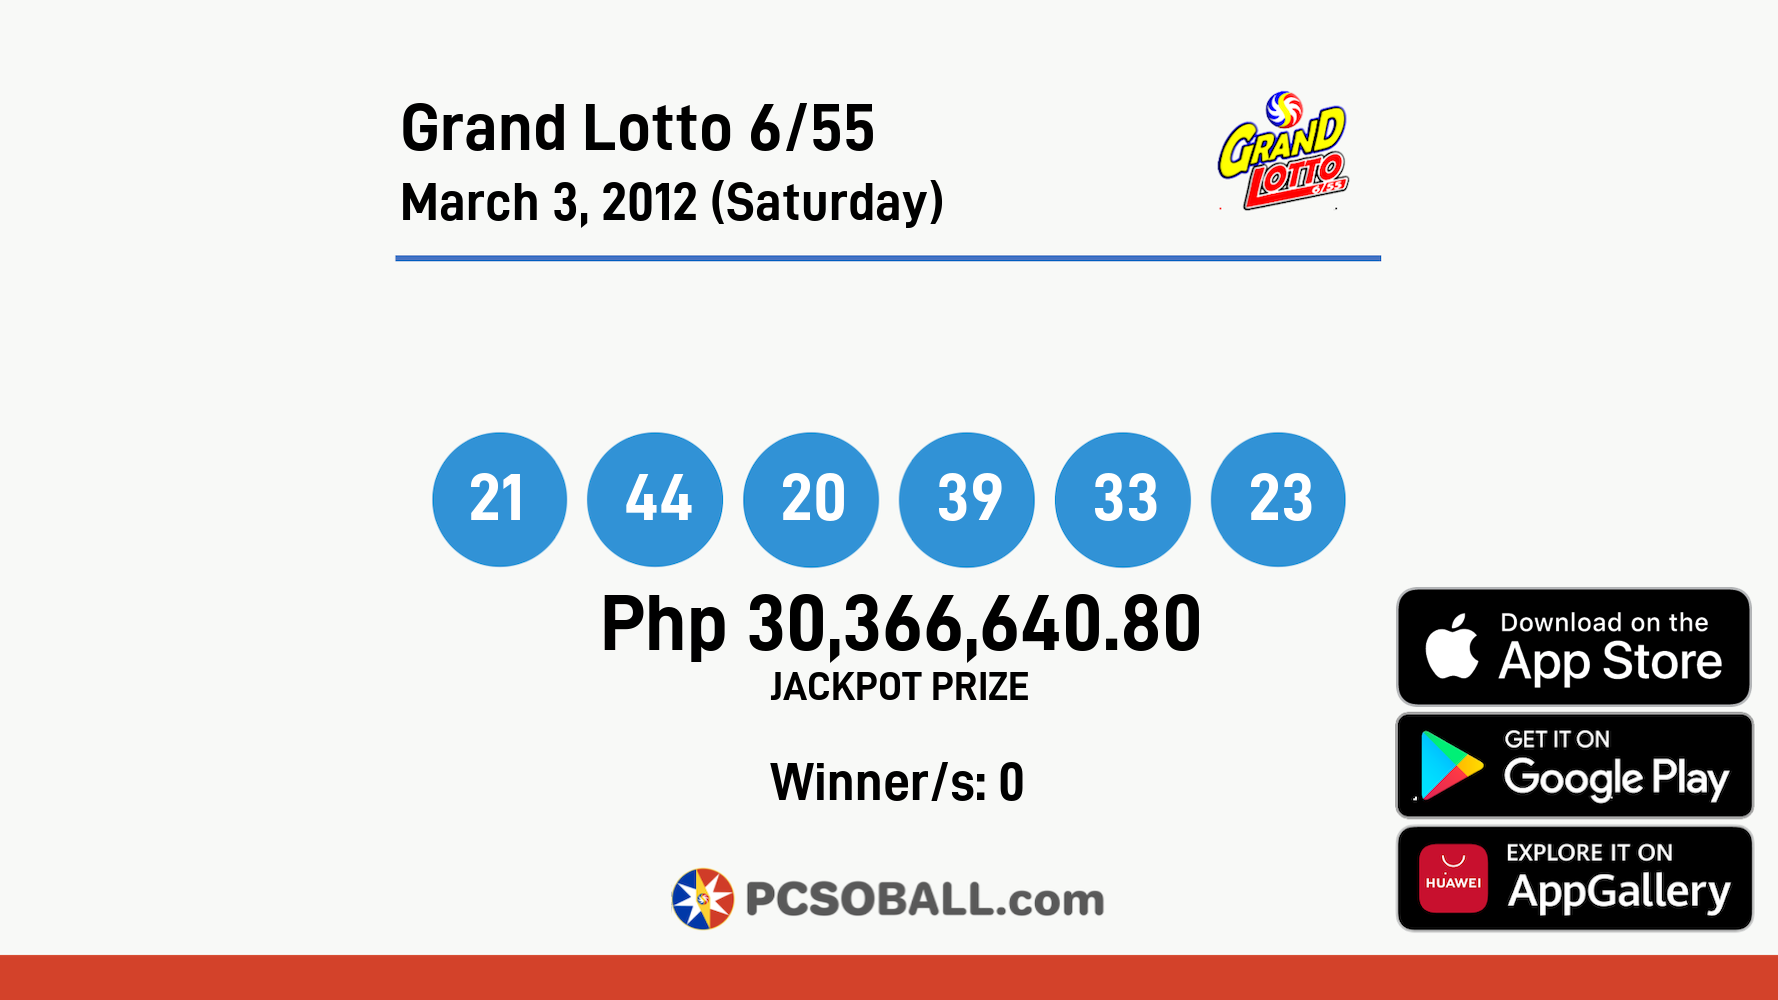 Grand Lotto 6/55 March 3, 2012 (Saturday) Result